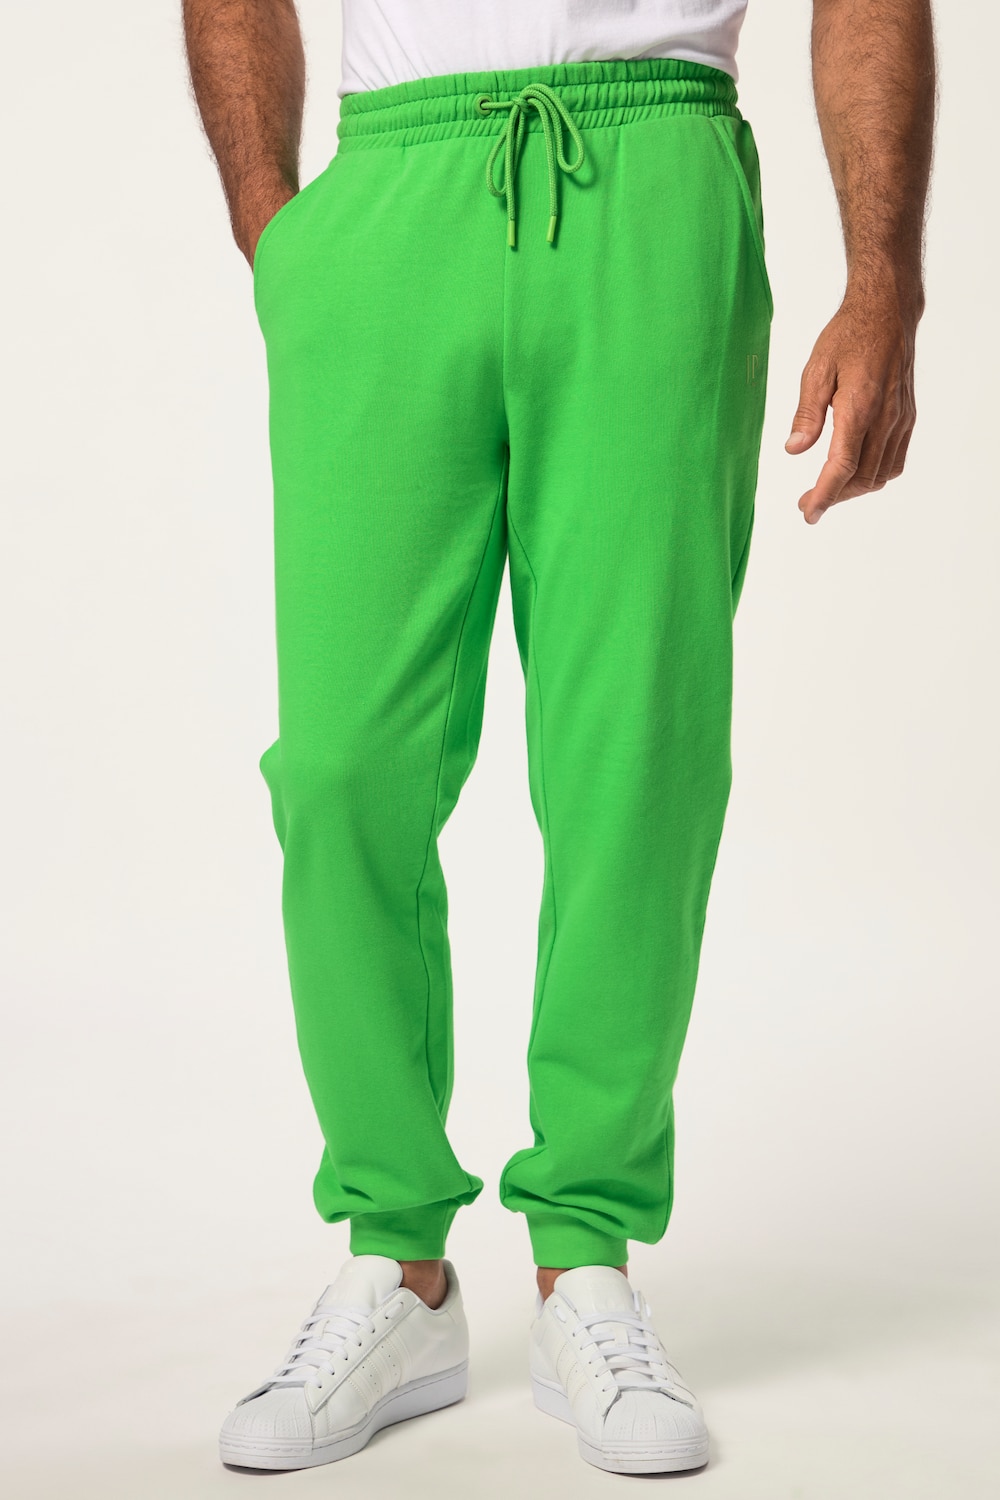 Grote Maten Sweatpants, Heren, groen, Maat: L, Katoen, JP1880